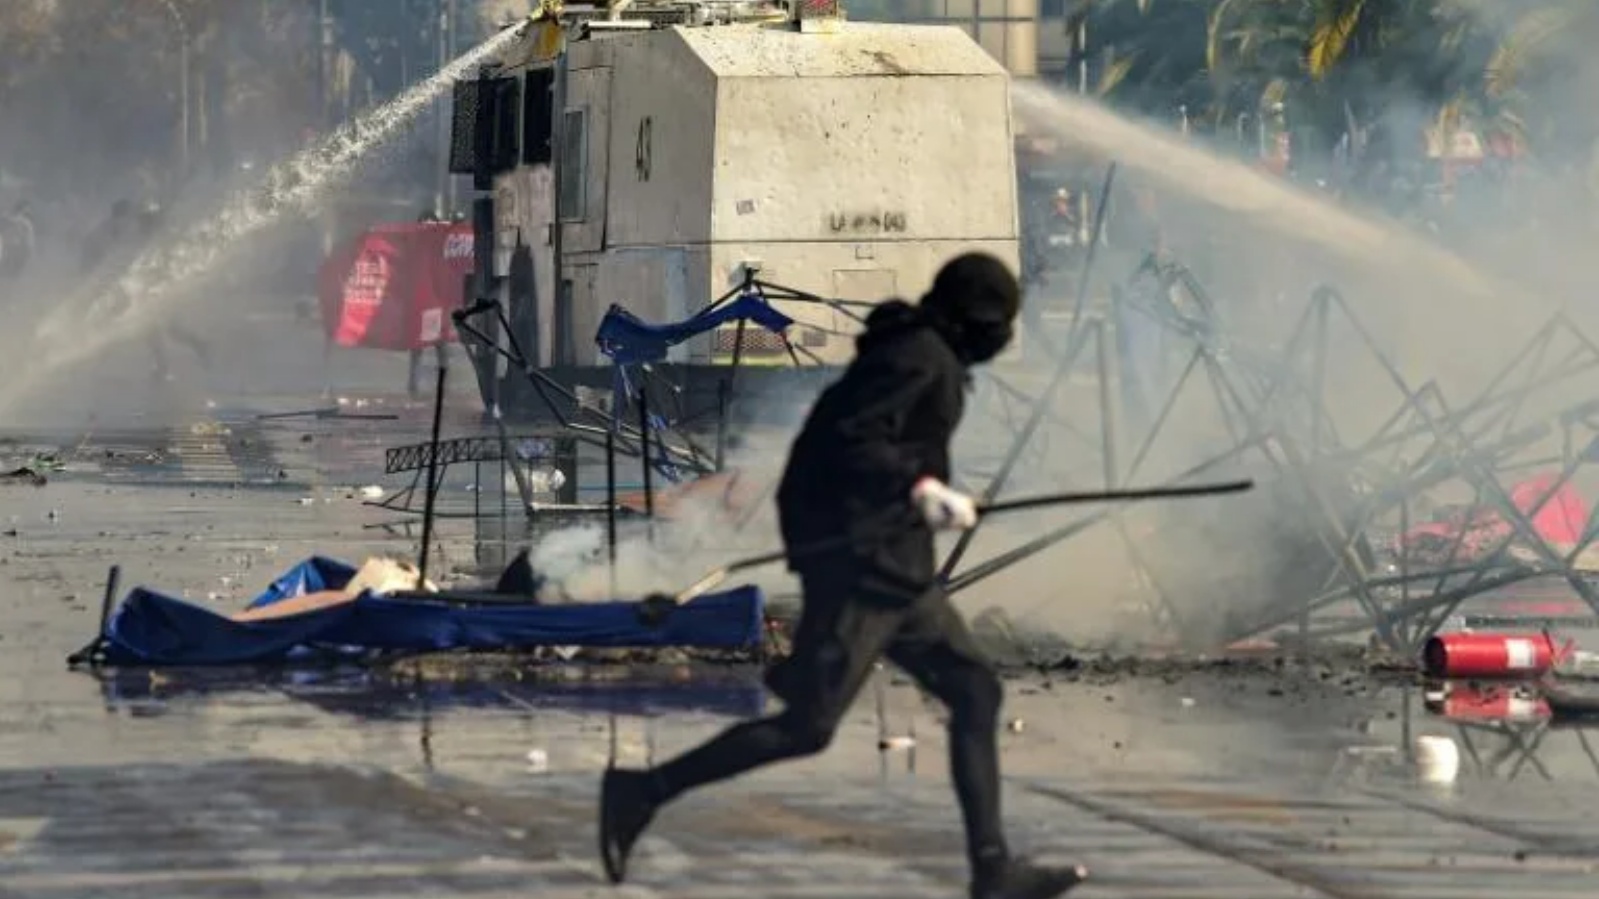 شرطة مكافحة الشغب تفرق المتظاهرين باستخدام خراطيم المياه خلال الاشتباكات التي أعقبت مسيرة عيد العمال في سانتياغو